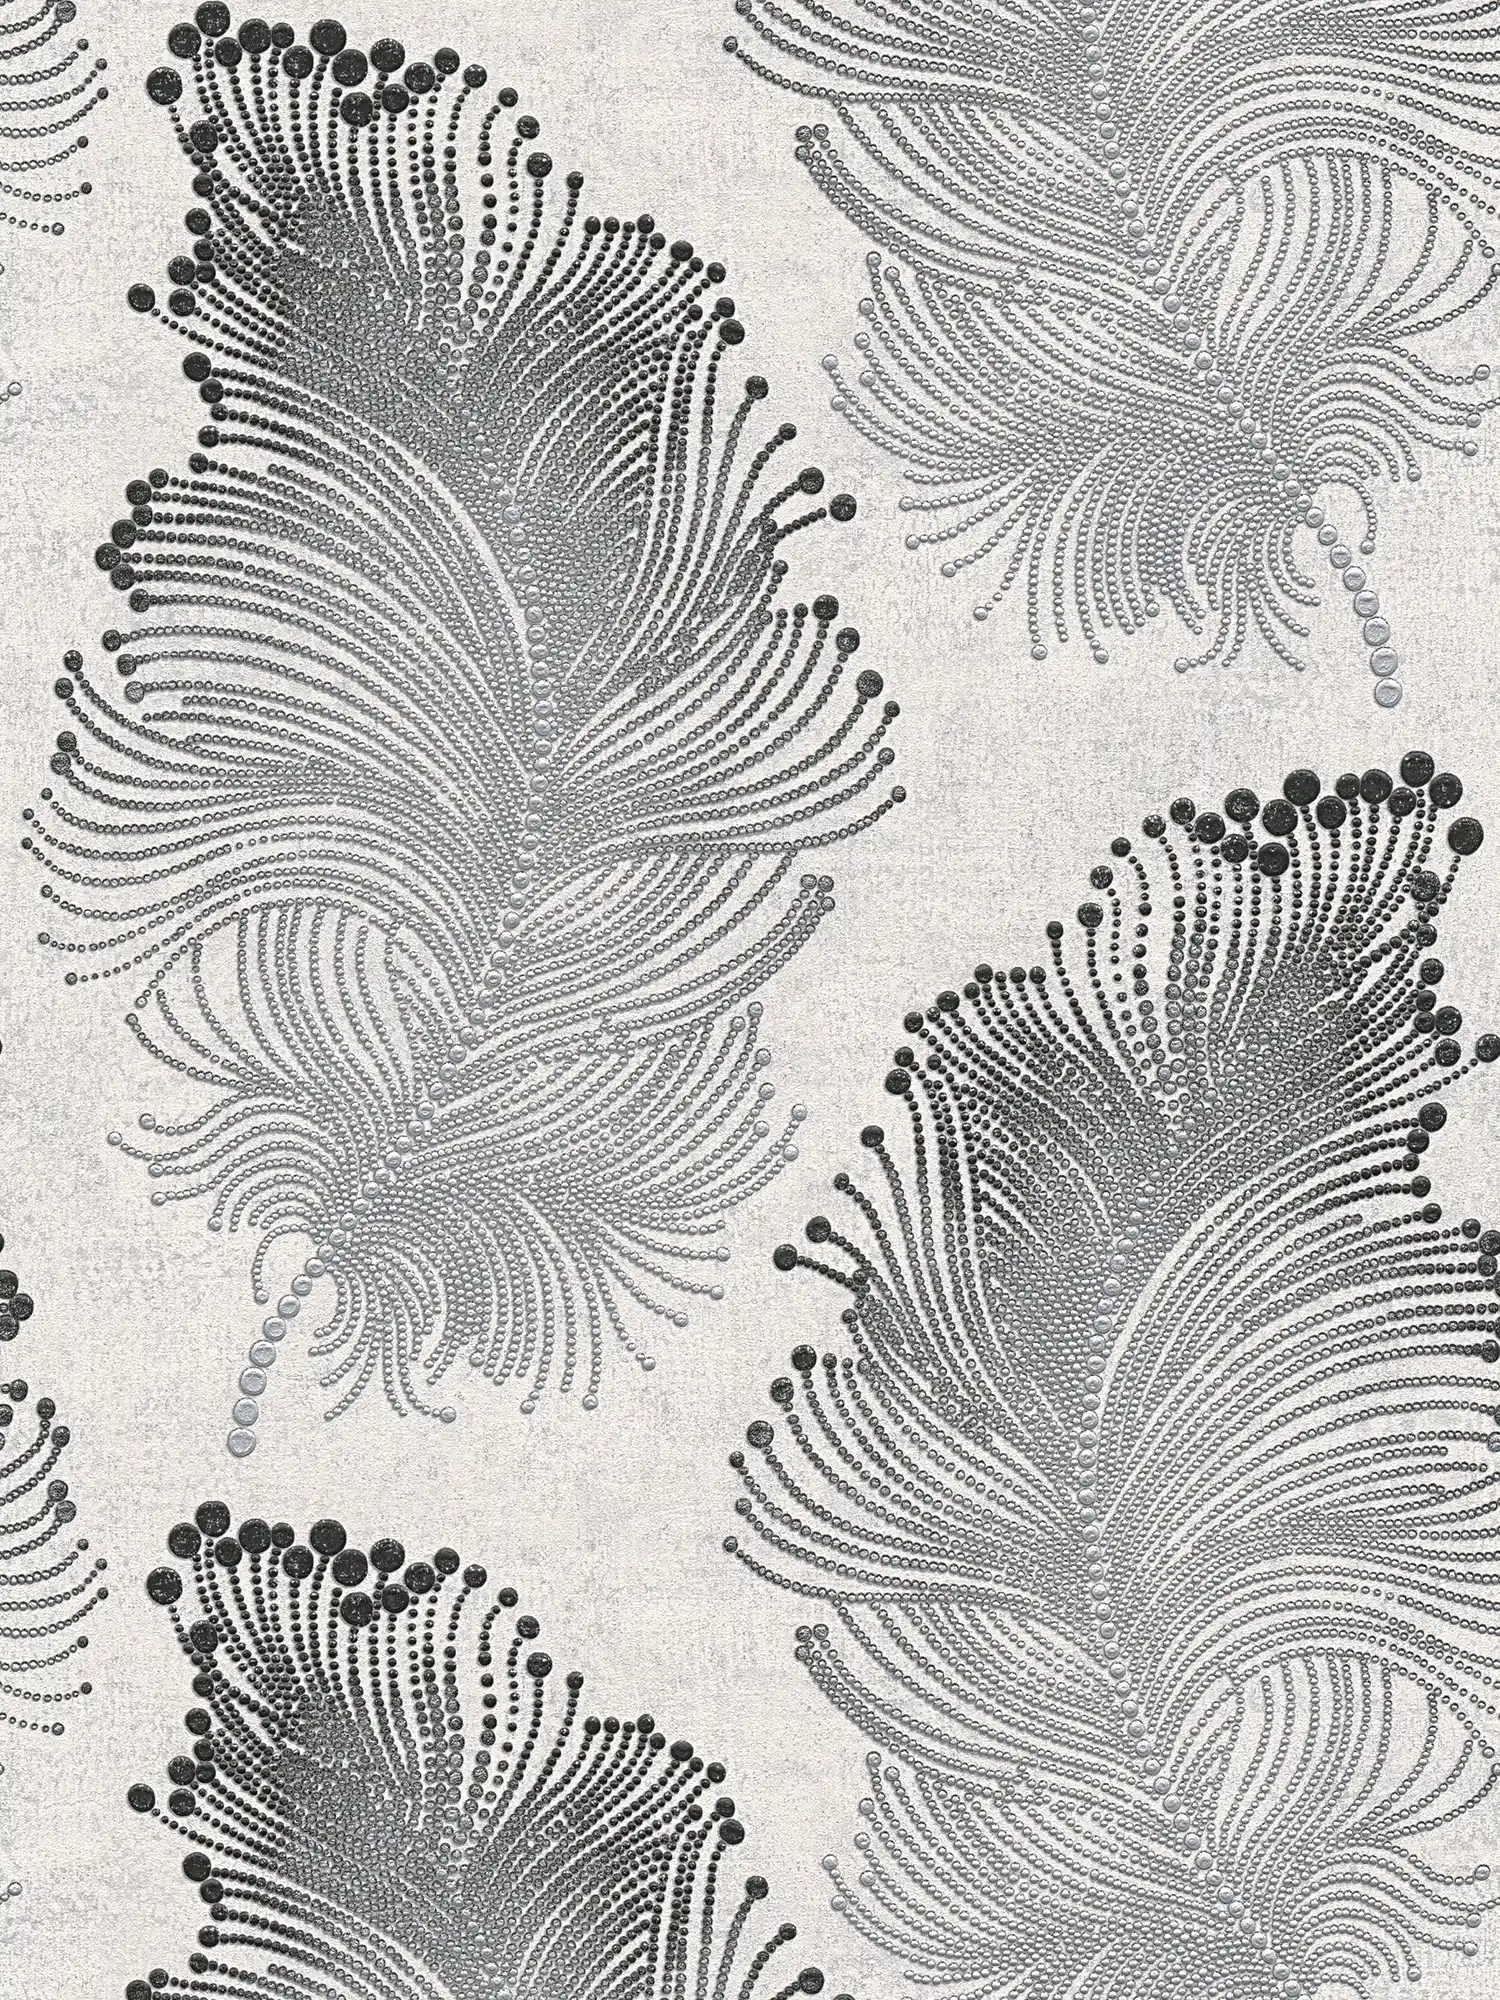 Metallic wallpaper with feather motif in boho style - metallic, white
